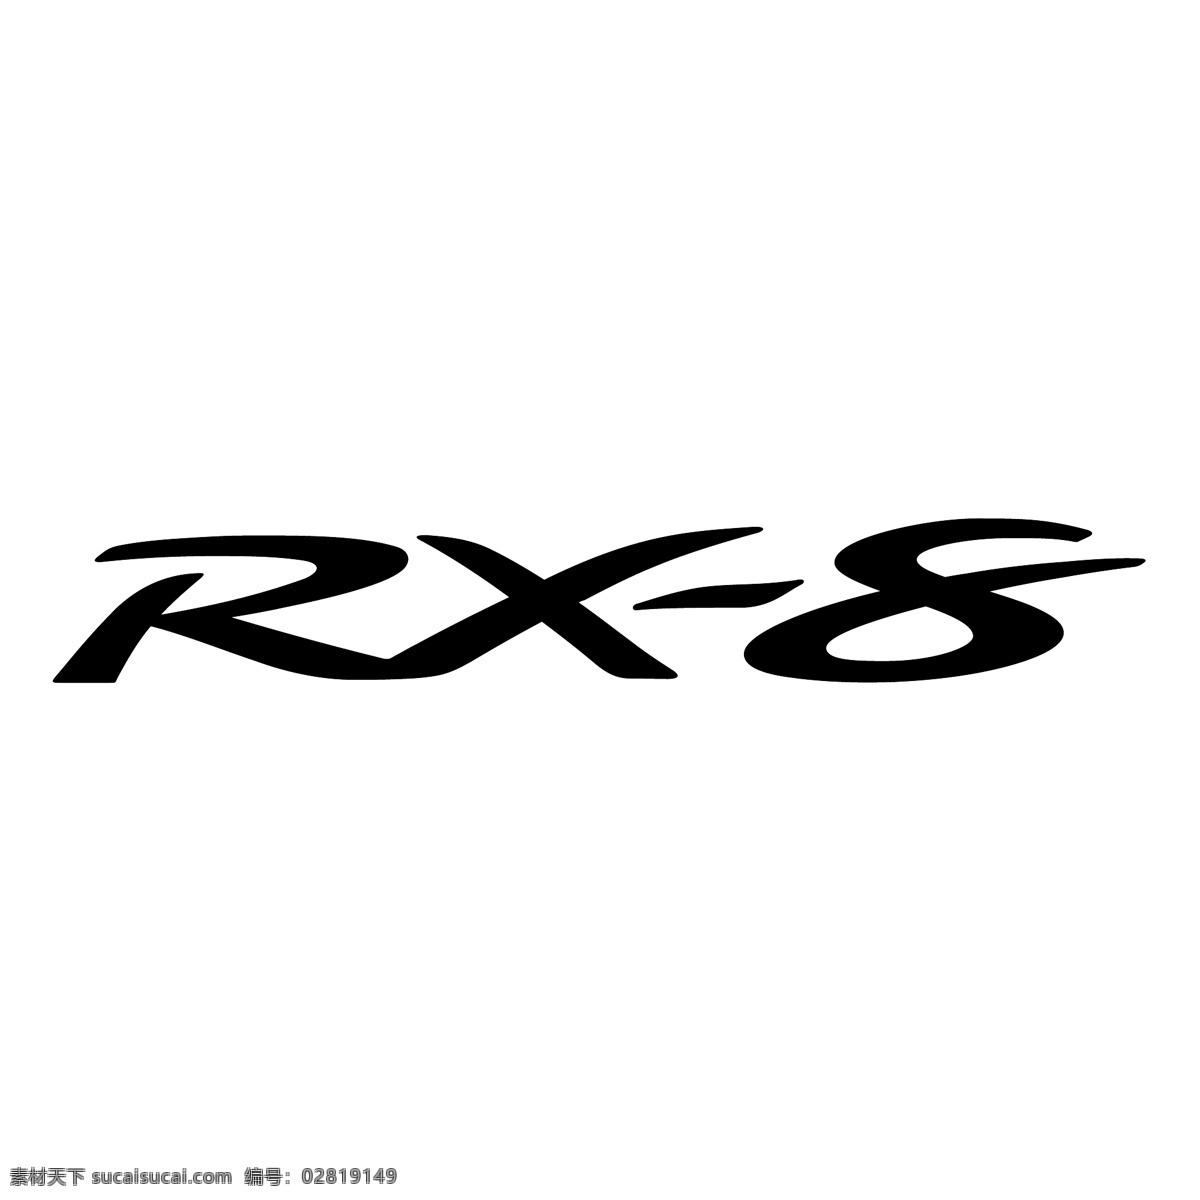 矢量艺术 自由 rx rx标志矢量 rx处方 免费矢量艺术 rx矢量设计 rx唯一标识 标识向量 矢量 图形 标志 向量 向量的rx rx免费下载 剪贴 画 rx矢量 建筑家居